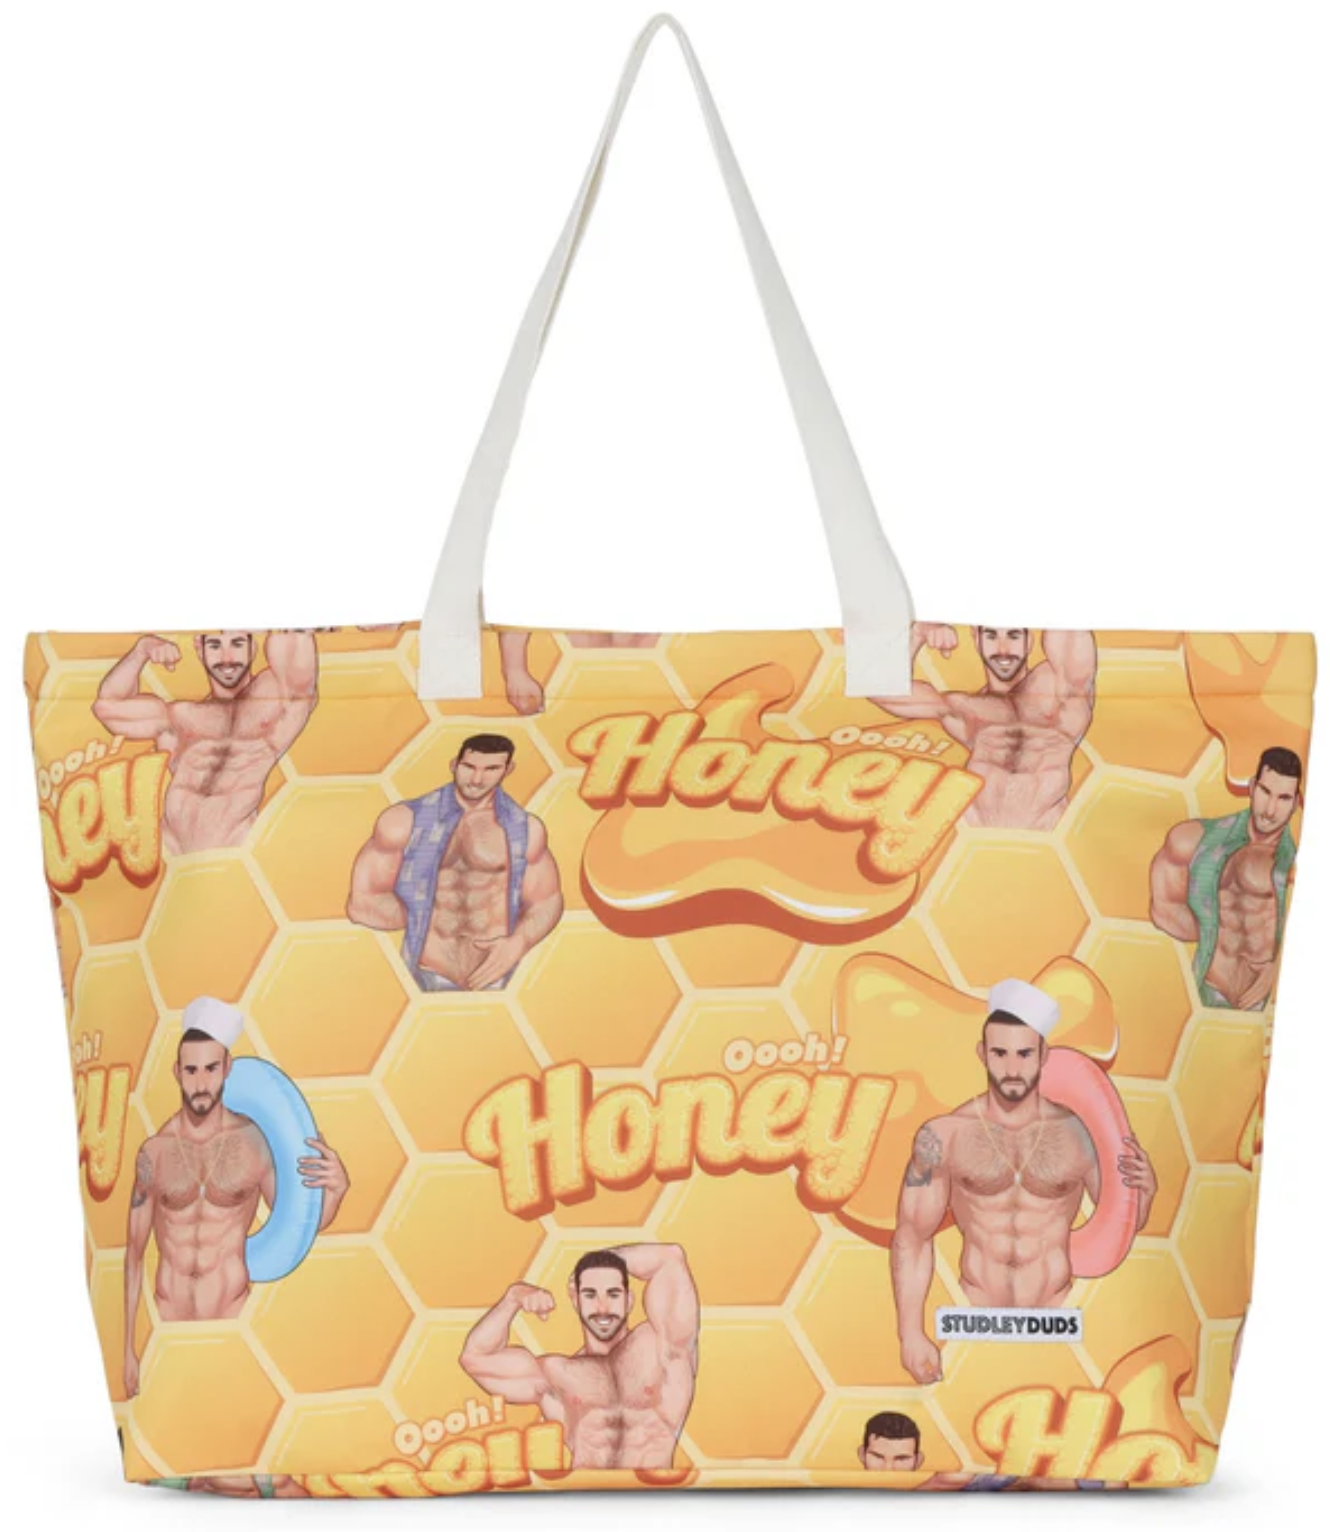 Oh Honey Tote Bag